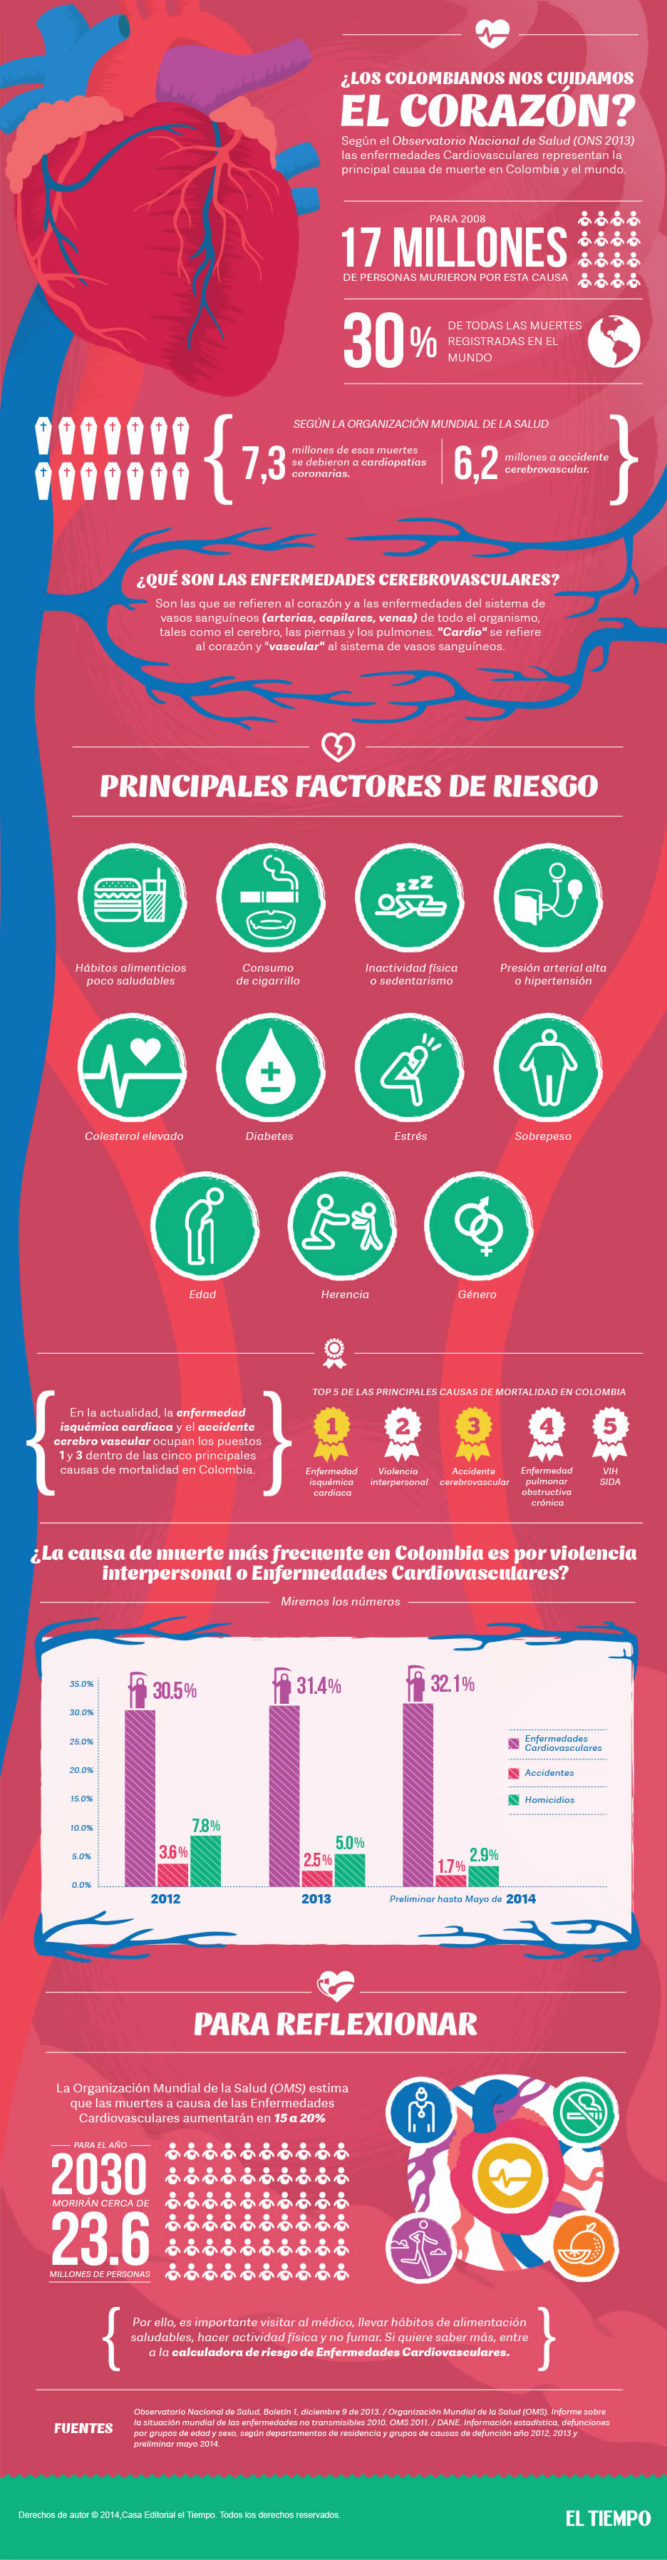 ¿Los Colombianos realmente cuidan su corazón?